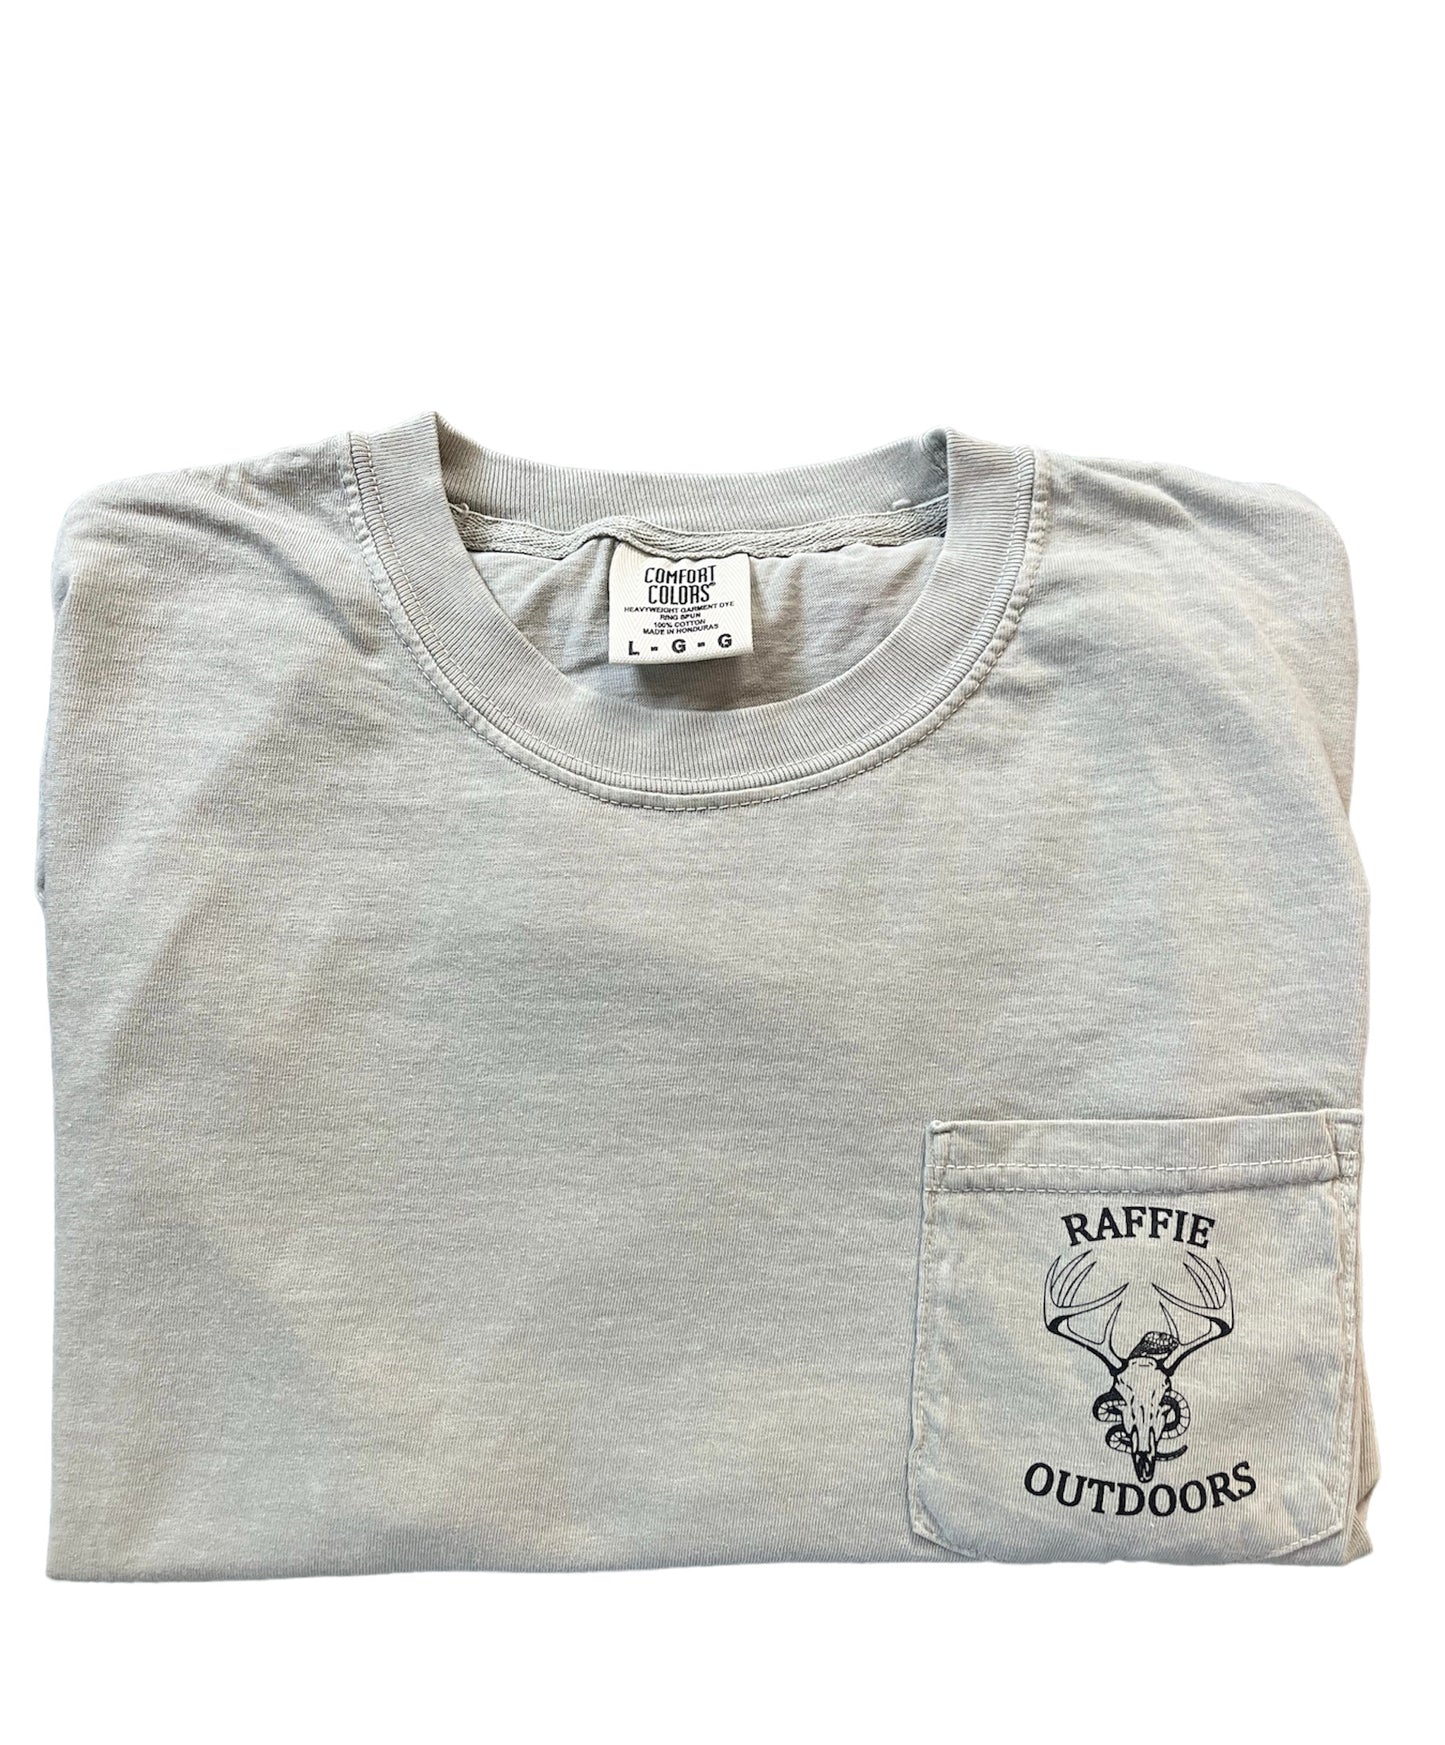 Raffie Outdoors Short Sleeve T-Shirt